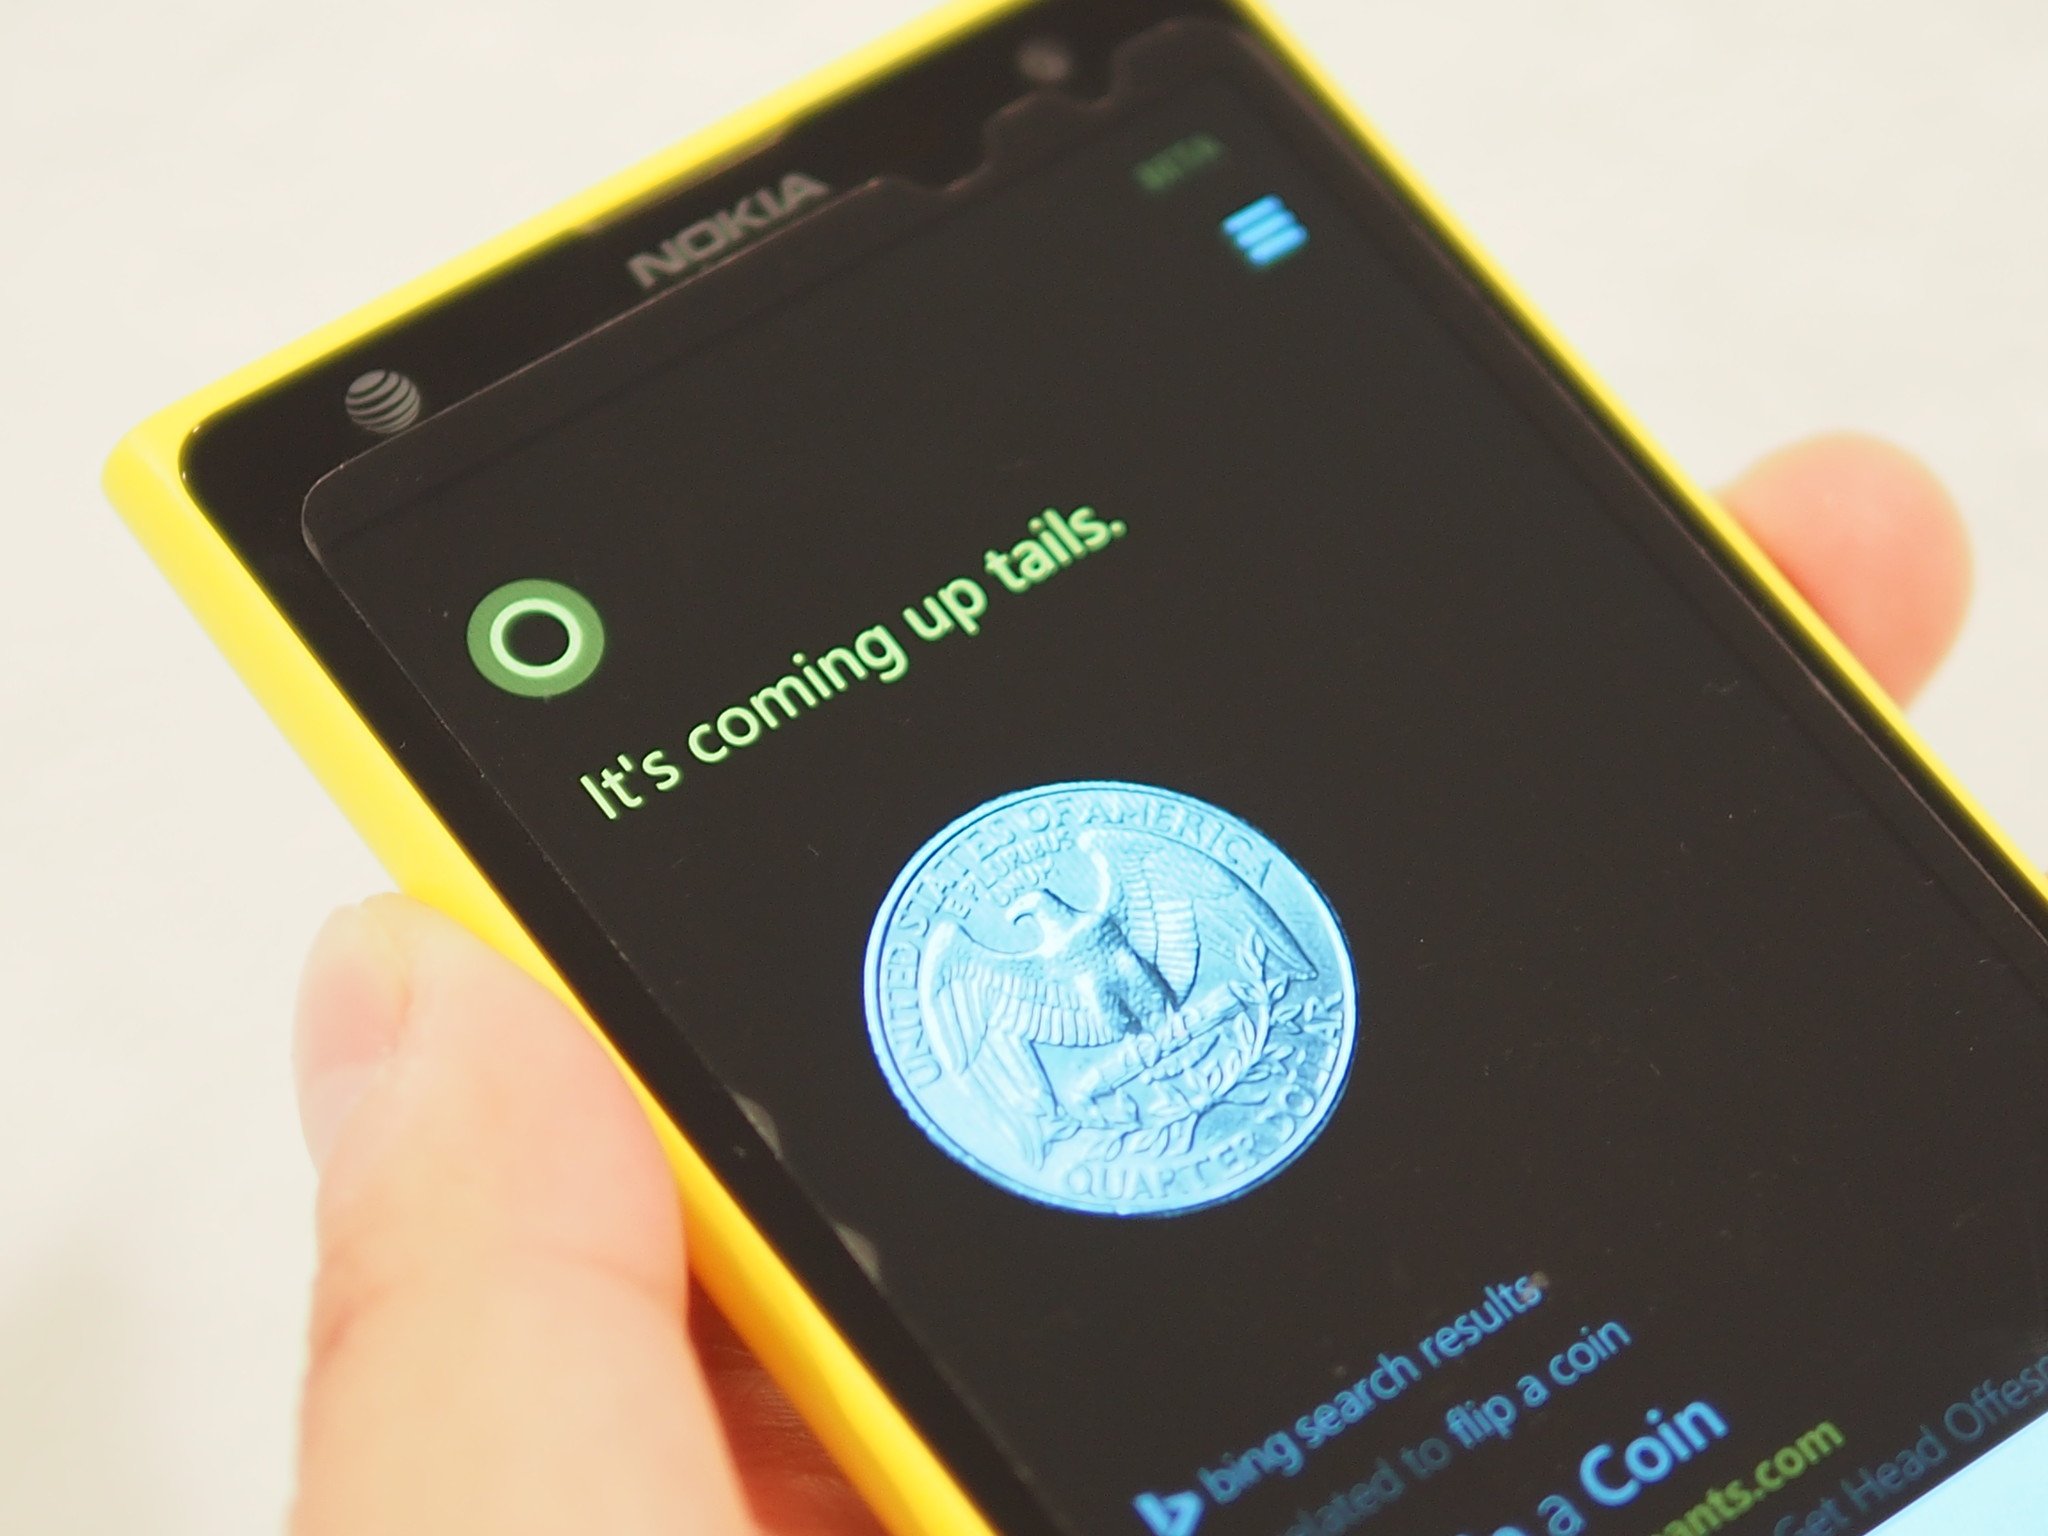 Cortana_Coin_Toss_Lumia_1020.JPG